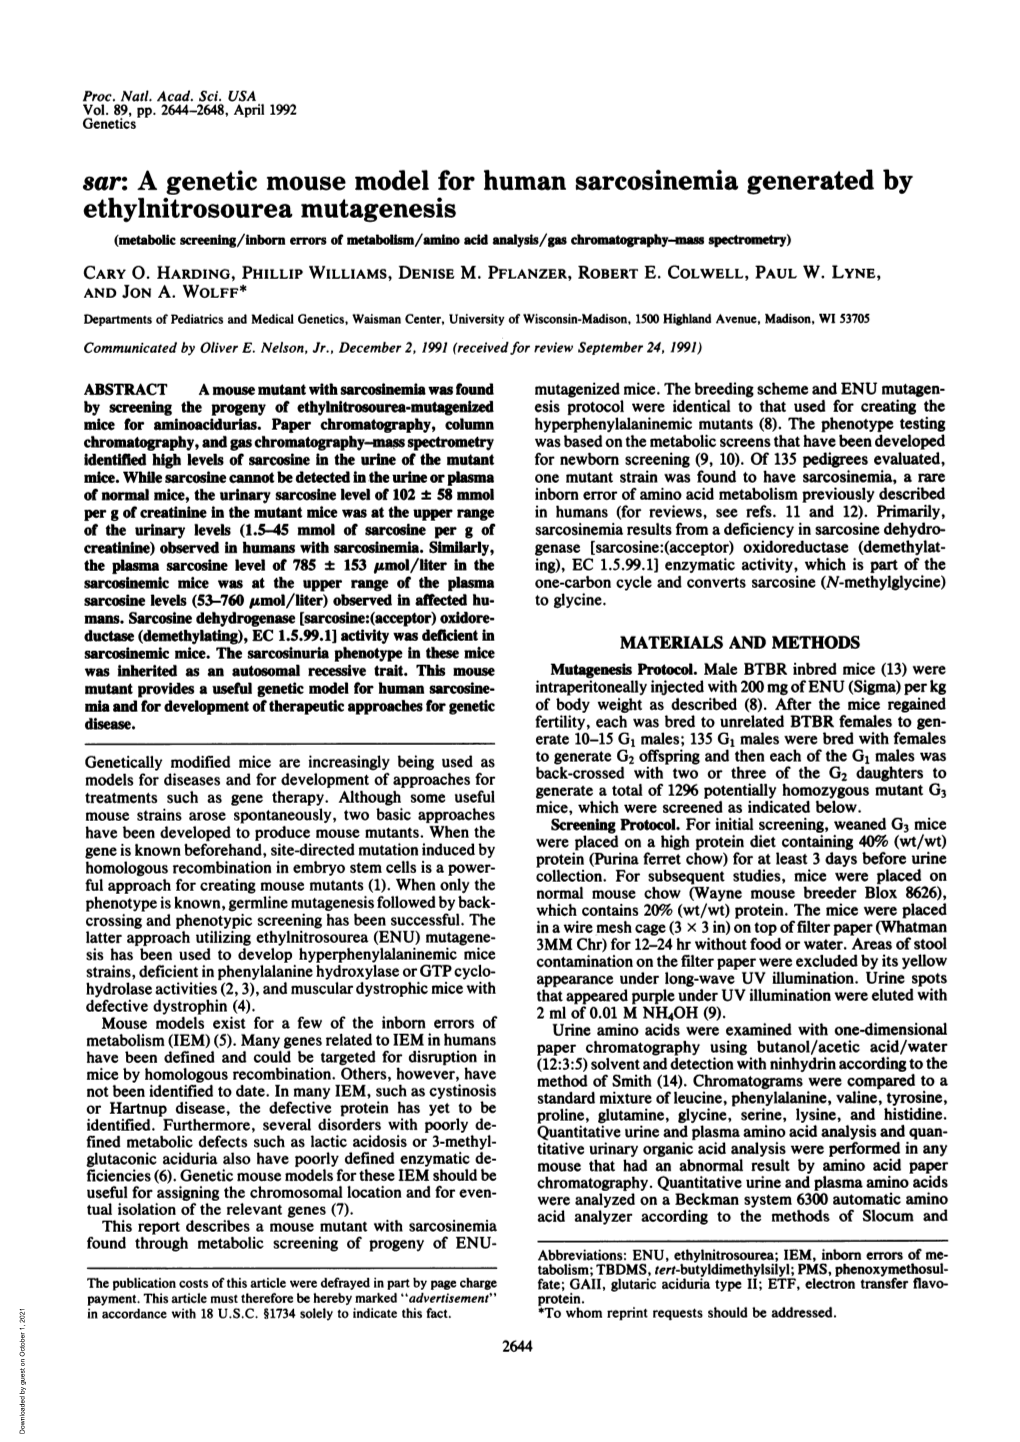 Ethylnitrosourea Mutagenesis (Metabolic Screening/Inborn Errors of Metabolism/Amino Acid Analysis/Gas Chromatography-Mass Spectrometry) CARY 0